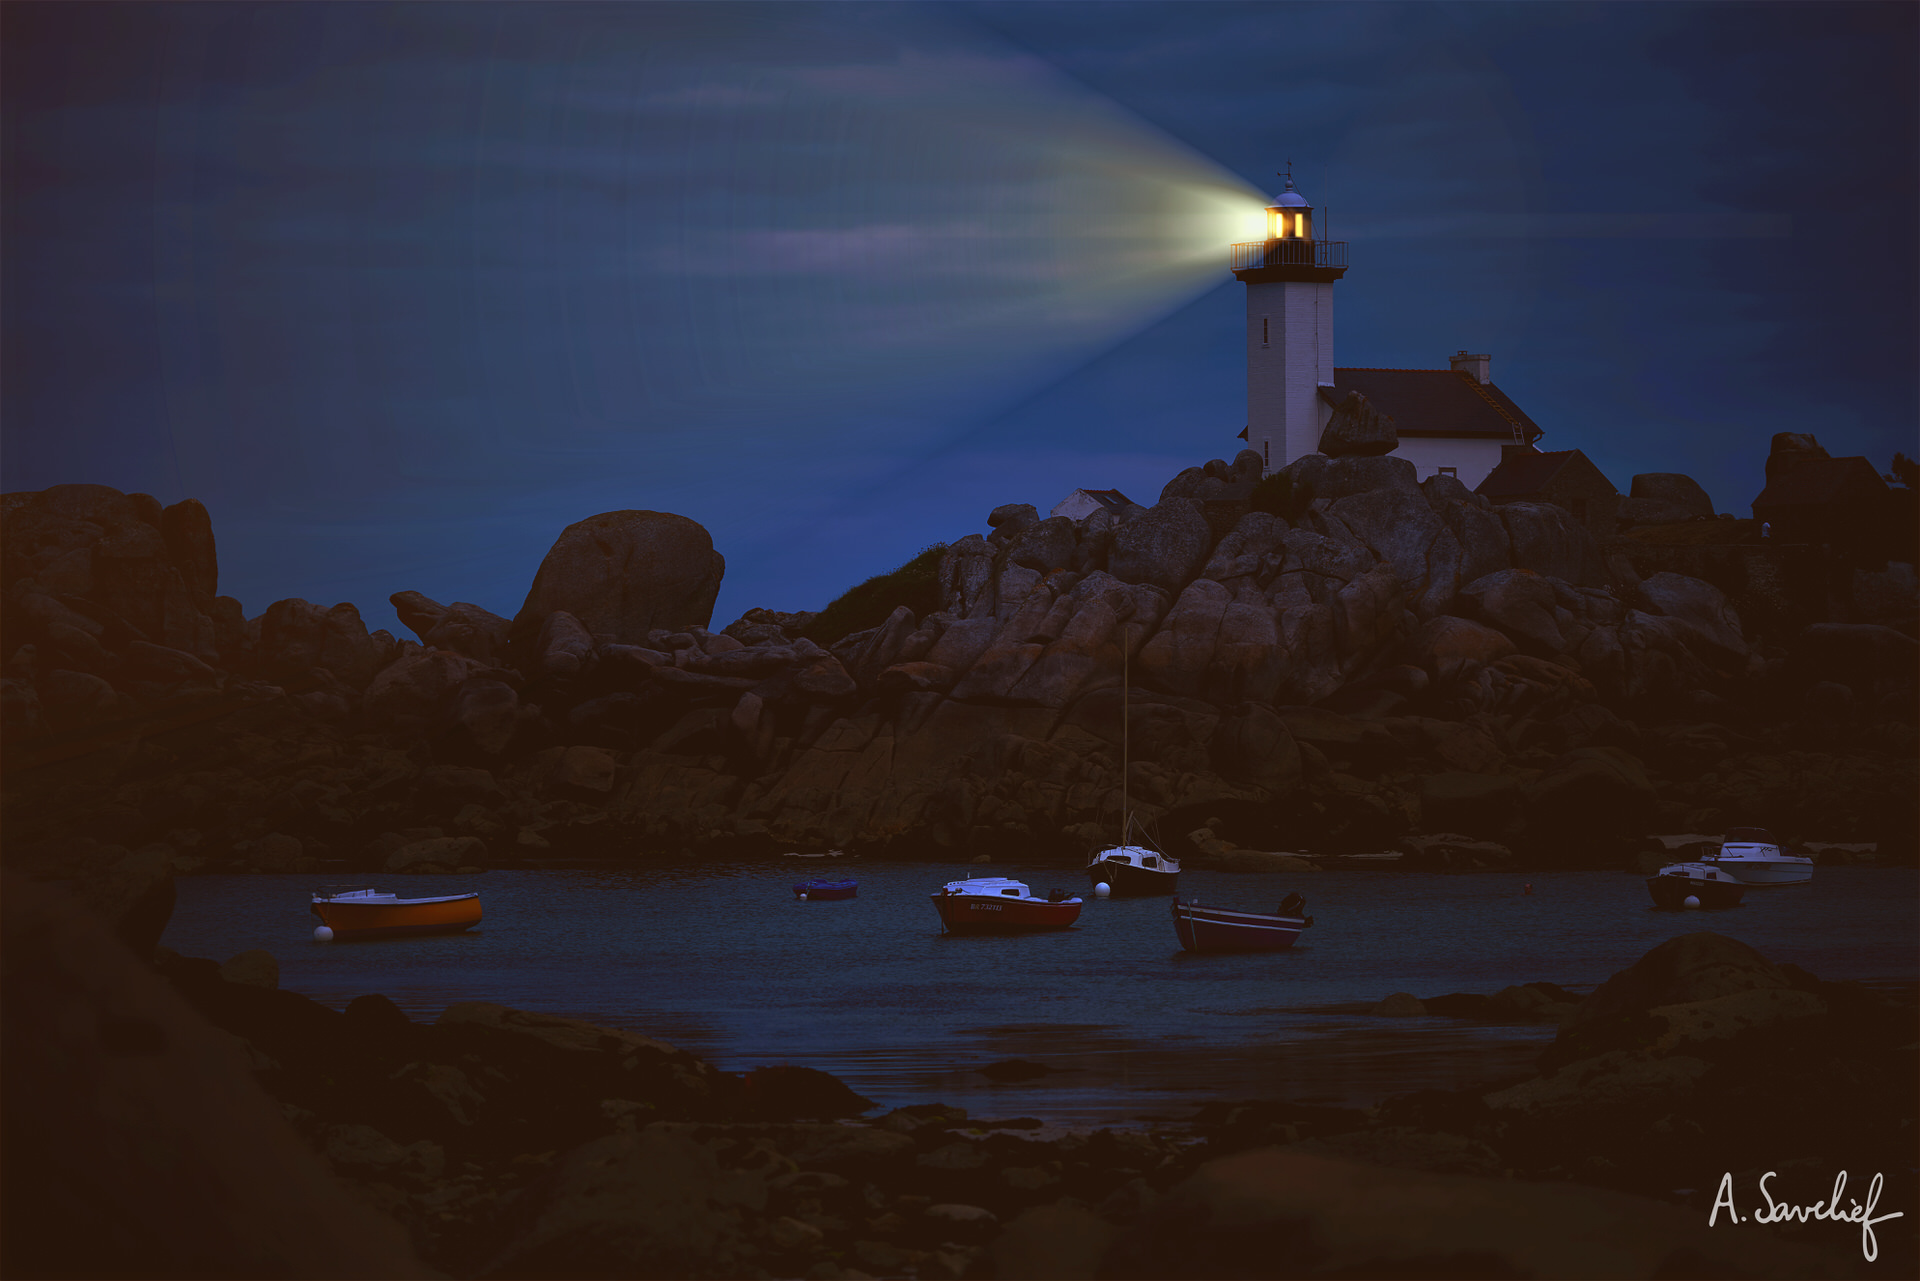 Phare breton sur les rochers, fanal lumineux surplombant une crique avec des bateaux